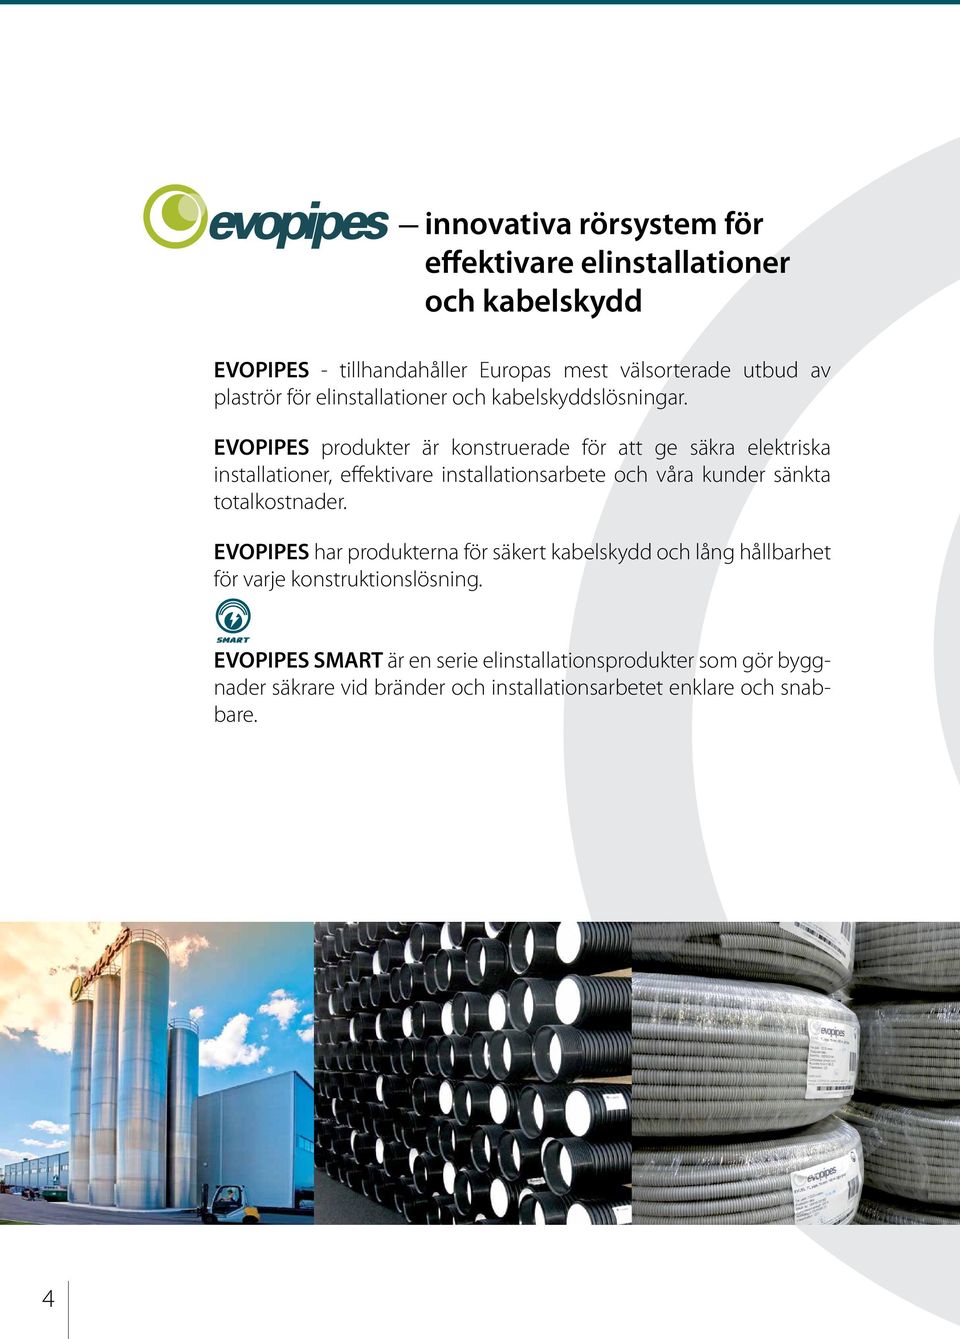 EVOPIPES produkter är konstruerade för att ge säkra elektriska installationer, effektivare installationsarbete och våra kunder sänkta